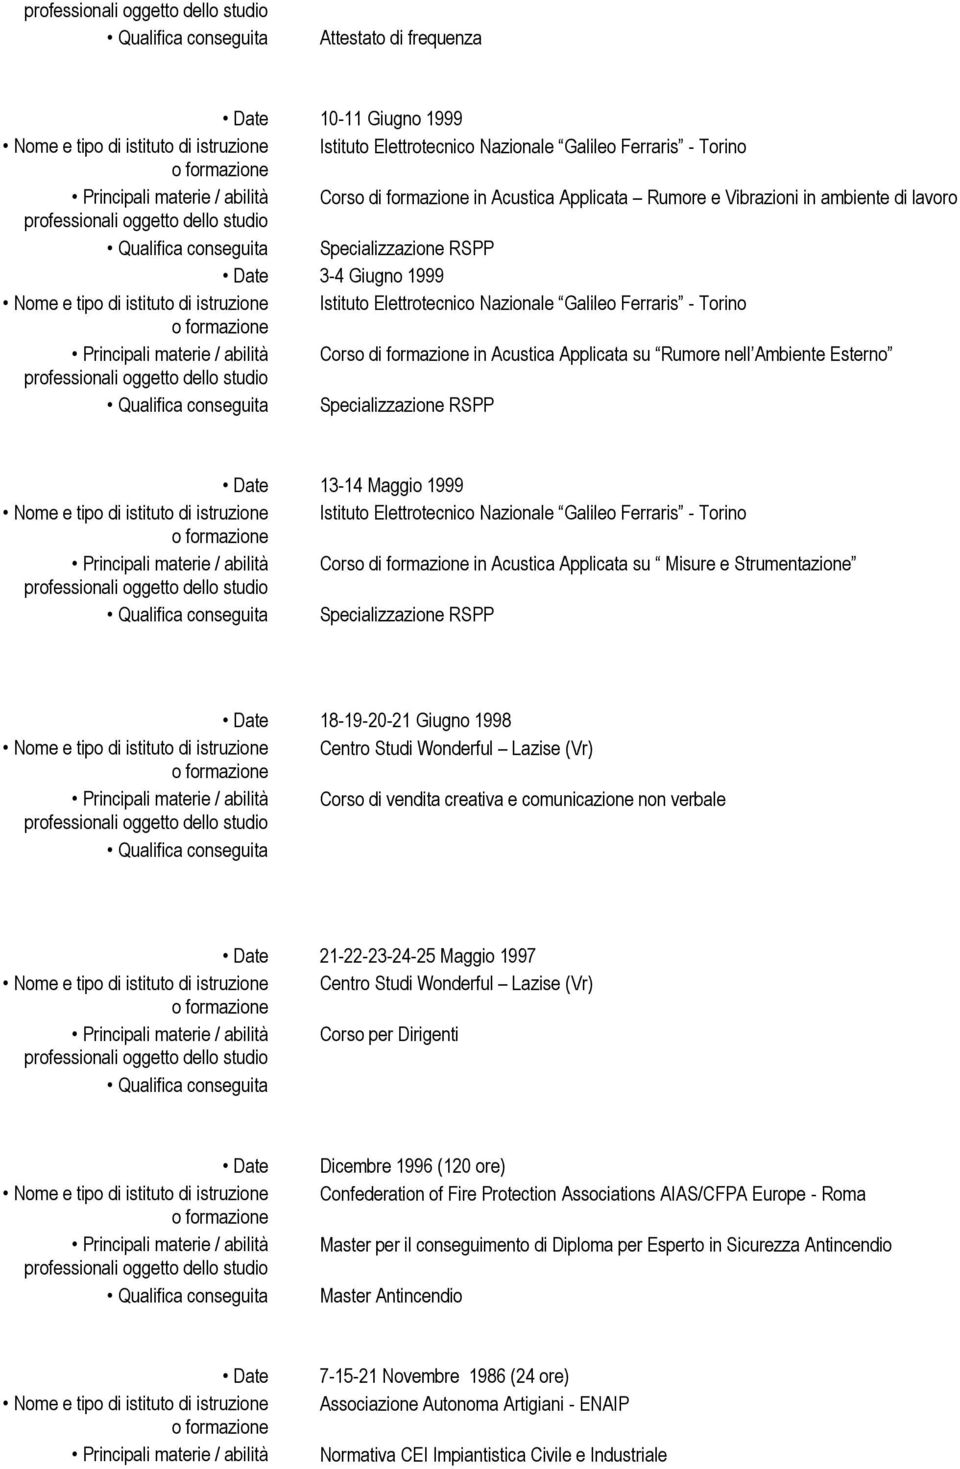 Nazionale Galileo Ferraris - Torino Corso di in Acustica Applicata su Misure e Strumentazione Specializzazione RSPP 18-19-20-21 Giugno 1998 Centro Studi Wonderful Lazise (Vr) Corso di vendita